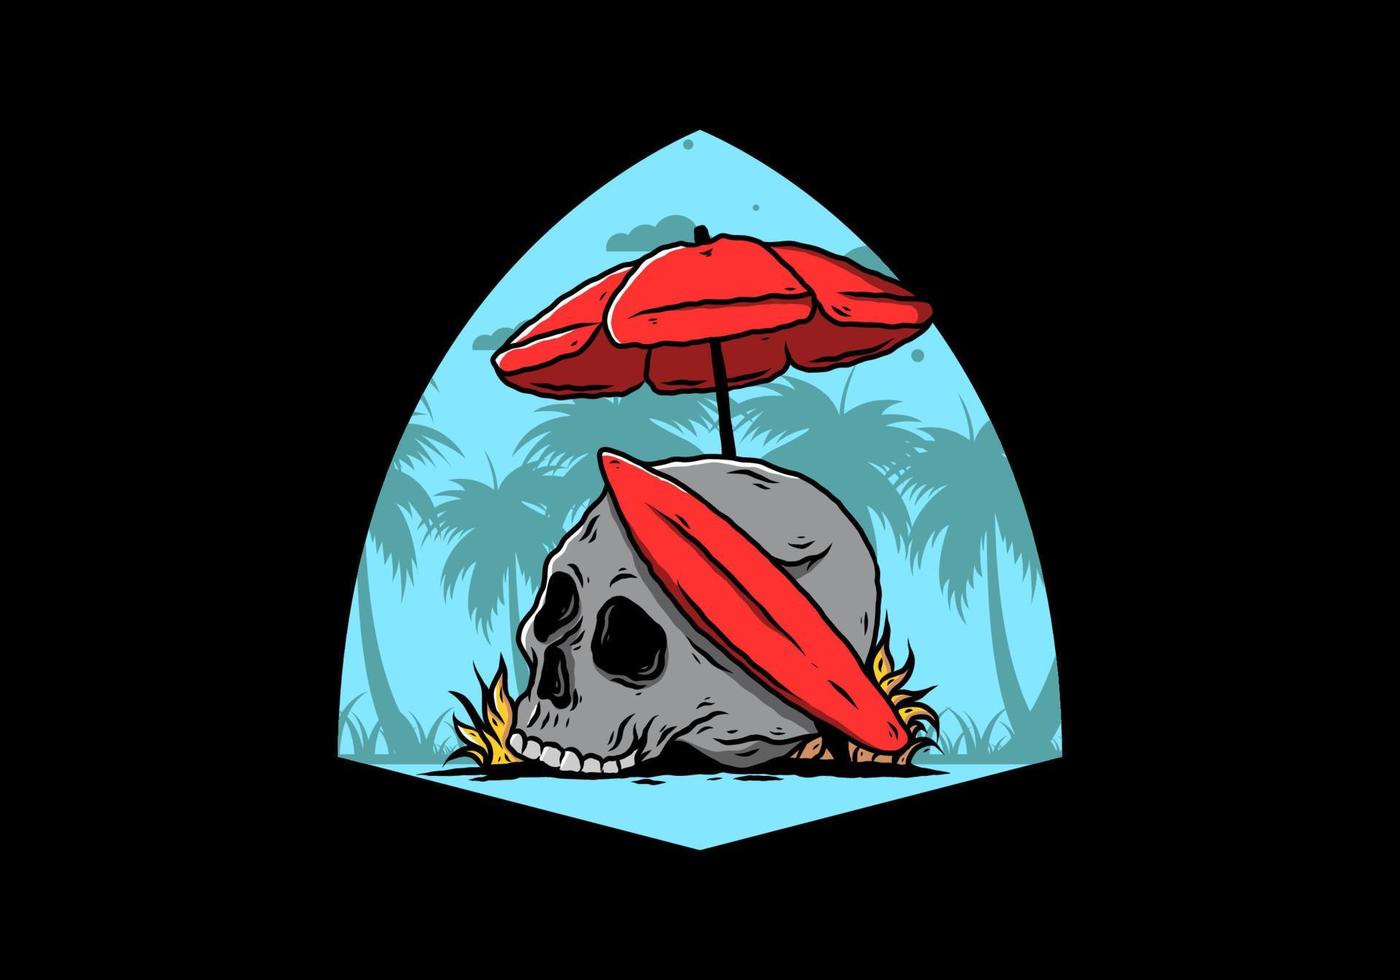 illustrazione del cranio con tavola da surf sotto l'ombrellone vettore